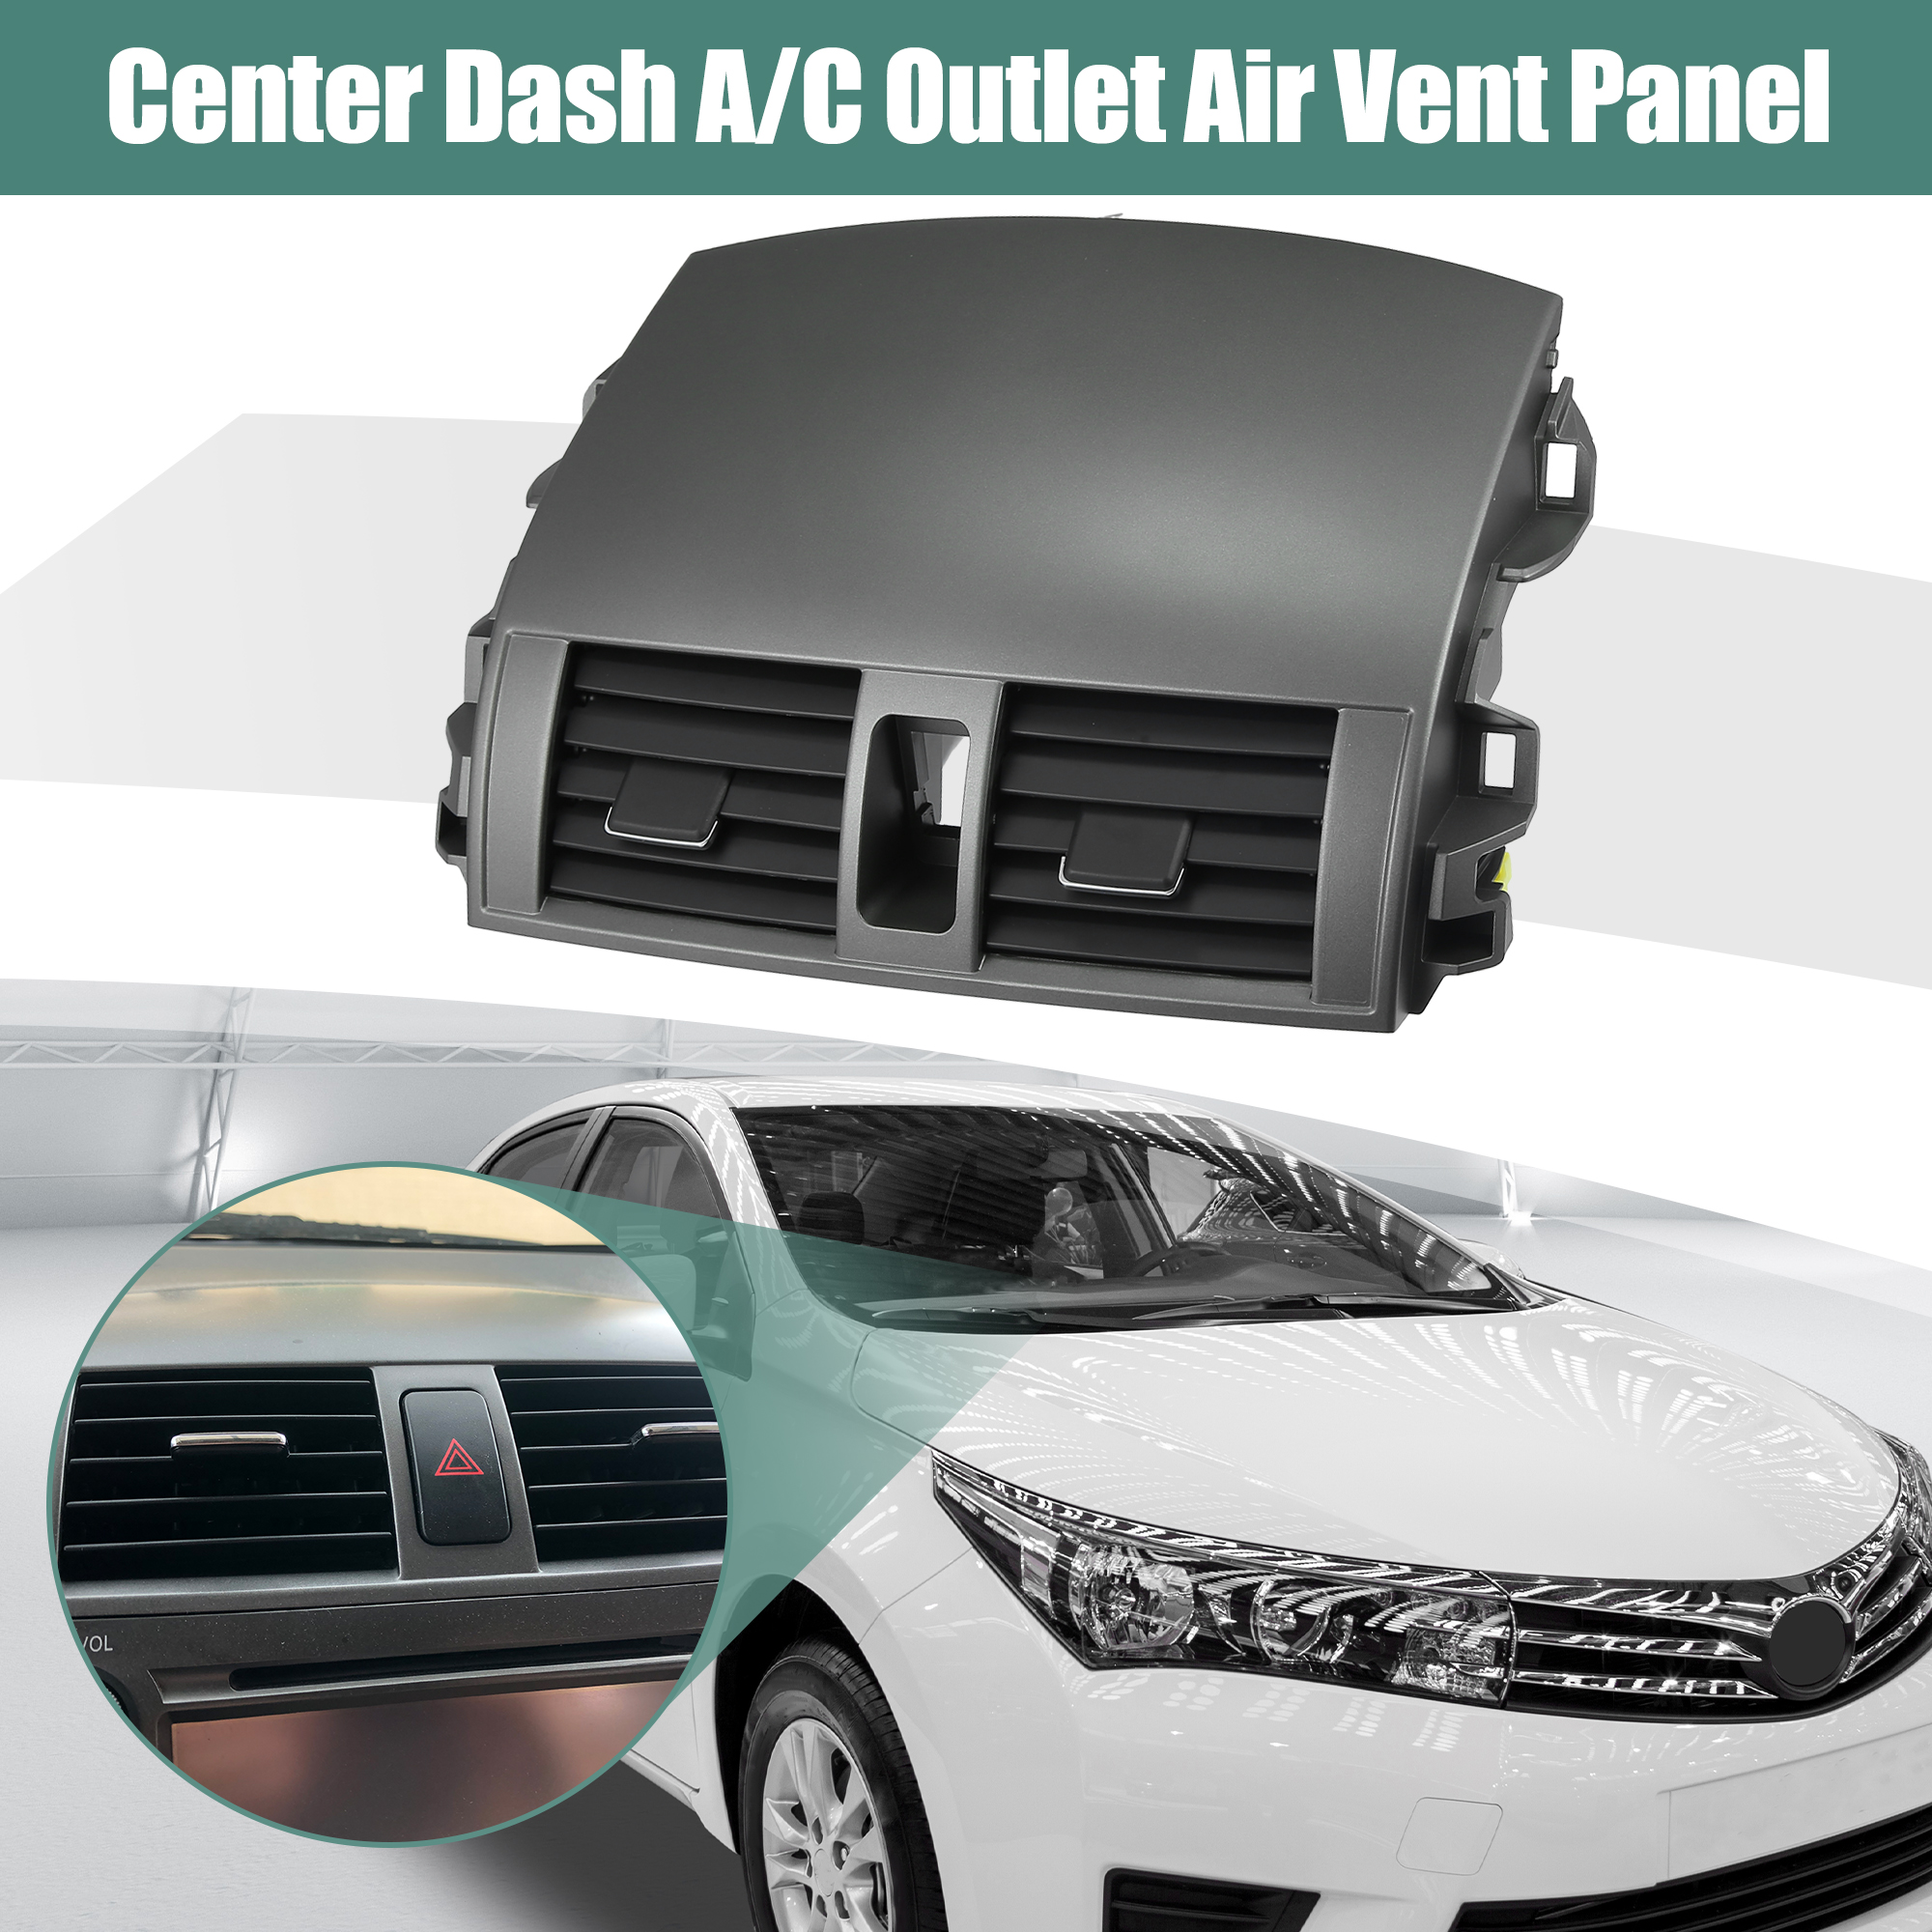 Unique Bargains Center Dash A/C Air Vent Outlet Panel for Toyota Corolla 2008-2013 55663-02060